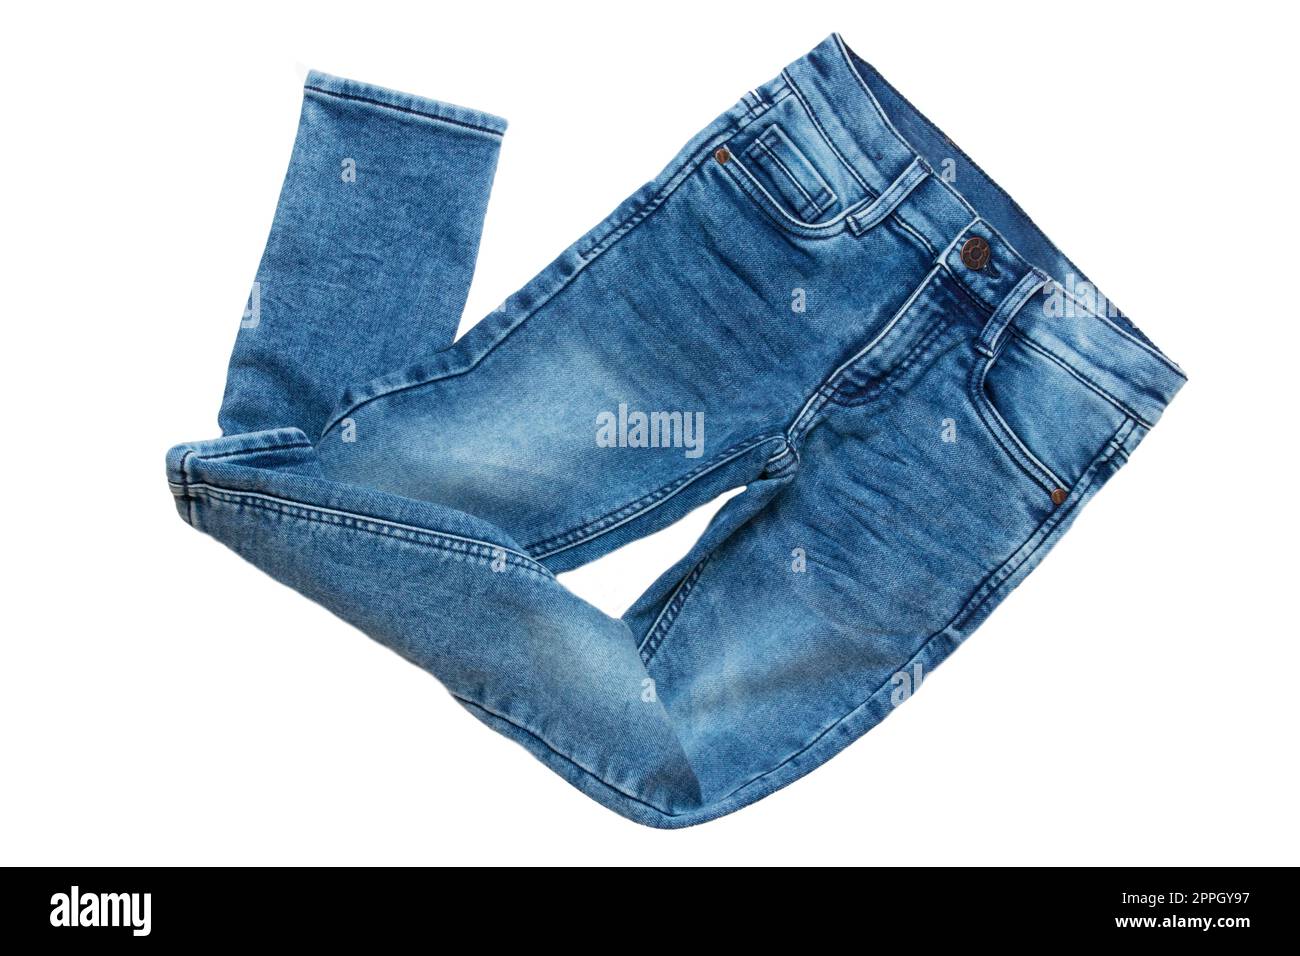 Blue jeans. Primo piano di un elegante paio di pantaloni o pantaloni in denim blu per bambini isolati su uno sfondo bianco. Moda estiva e autunnale per bambini. Vista frontale. Foto Stock